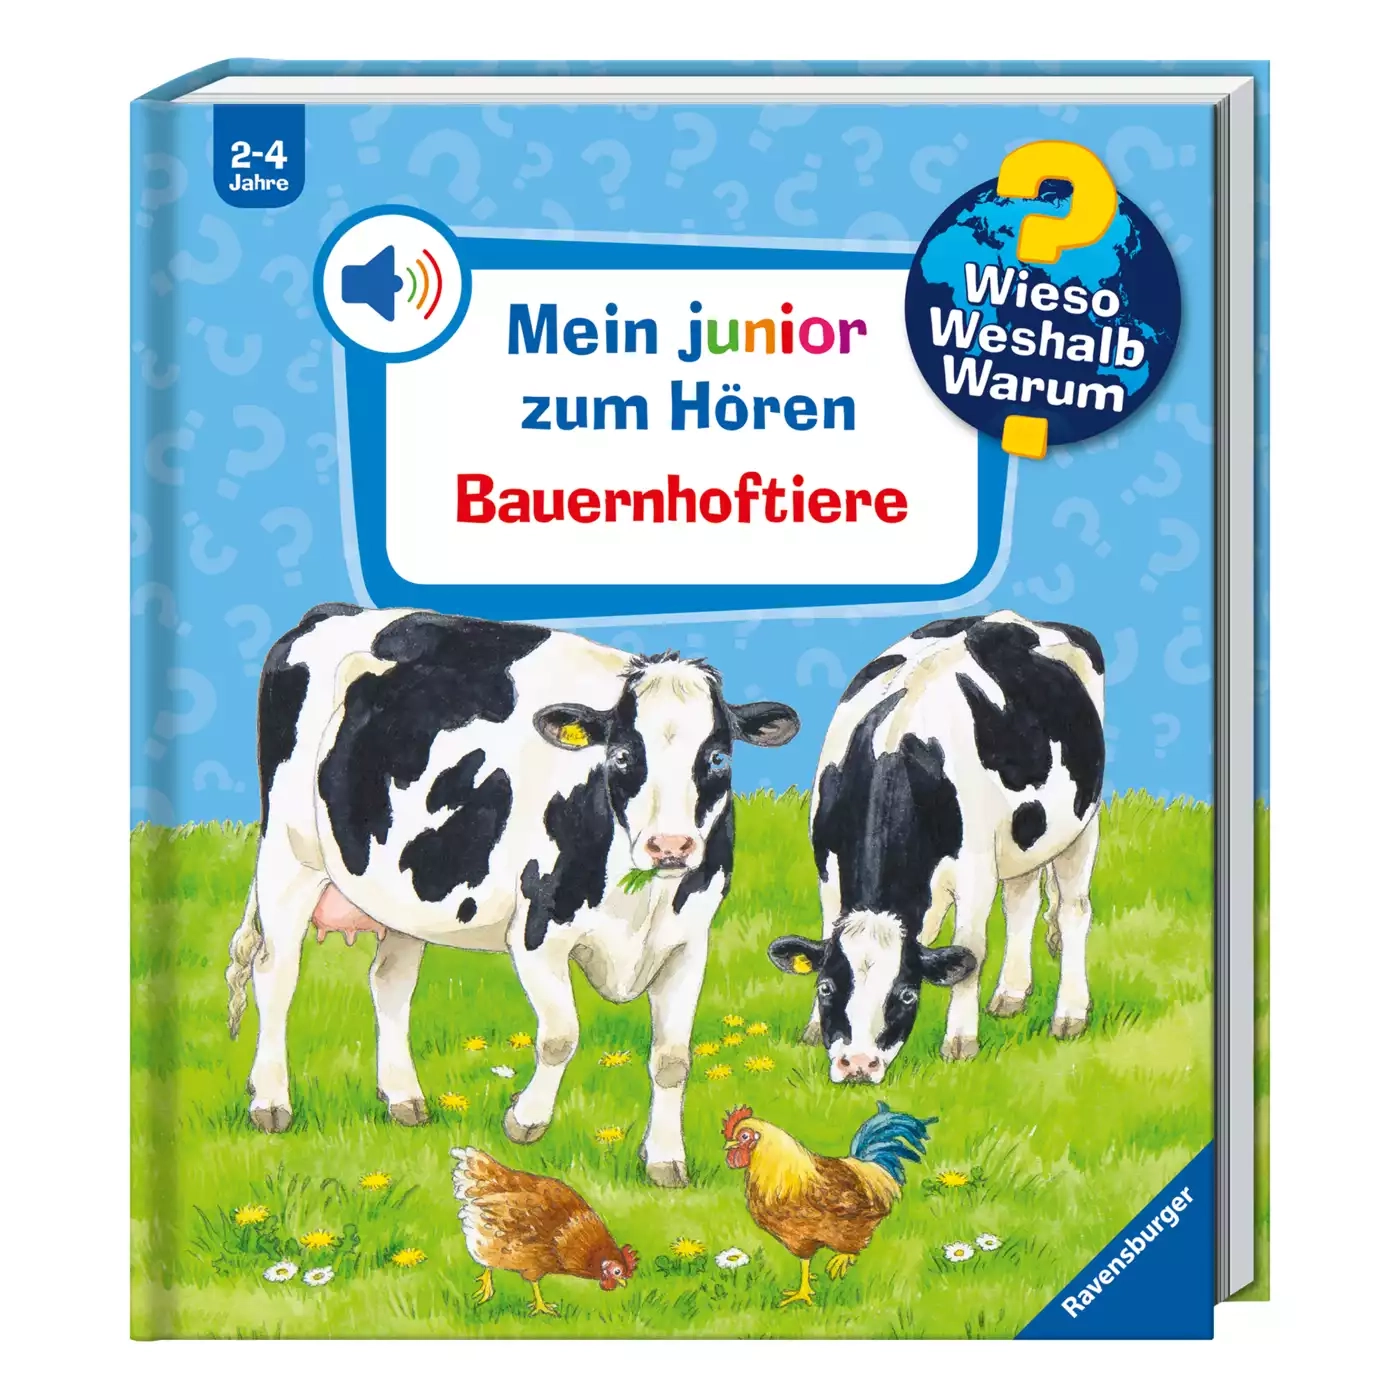 WWW Mein junior zum Hören: Bauernhoftiere Ravensburger 2000578897703 3